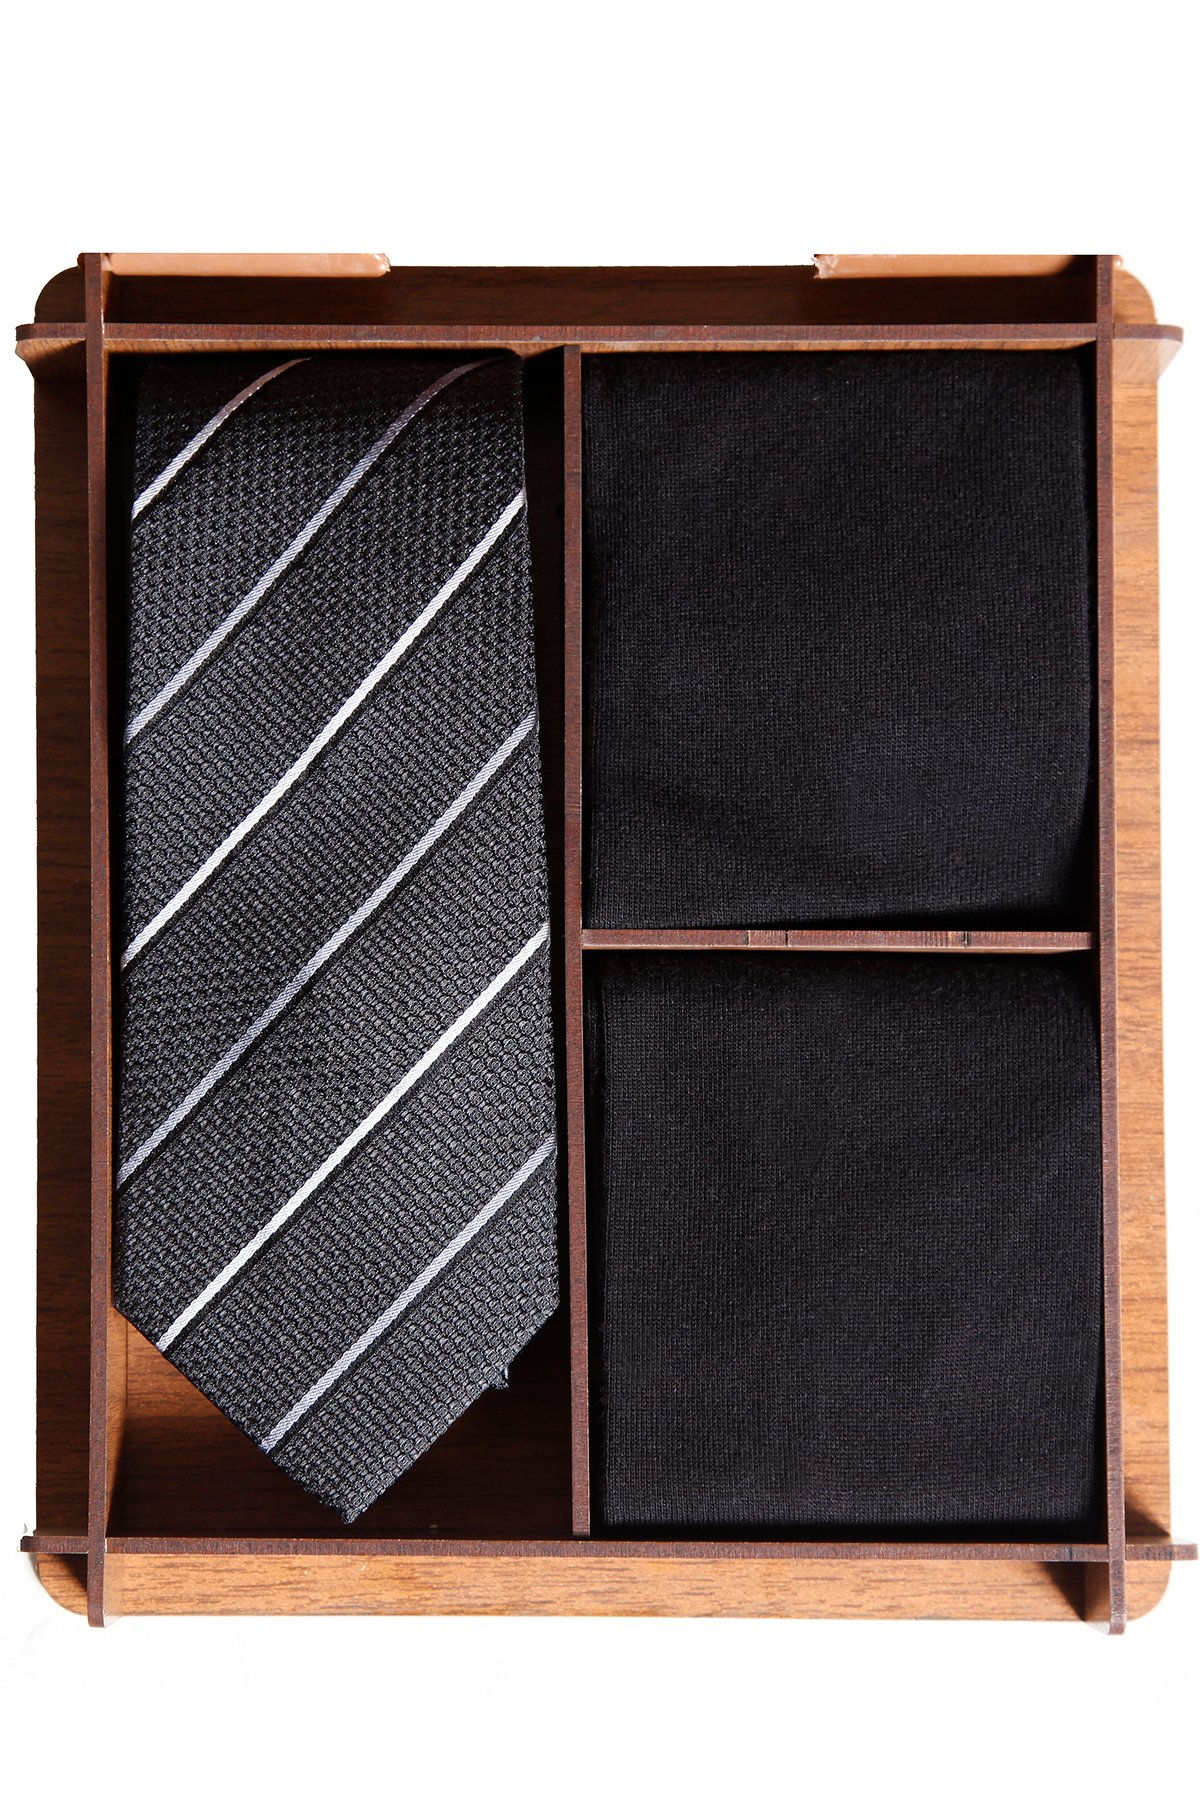 Ahşap kutuda klasik ipek kravat ve bambu çoraplı erkek hediye seti